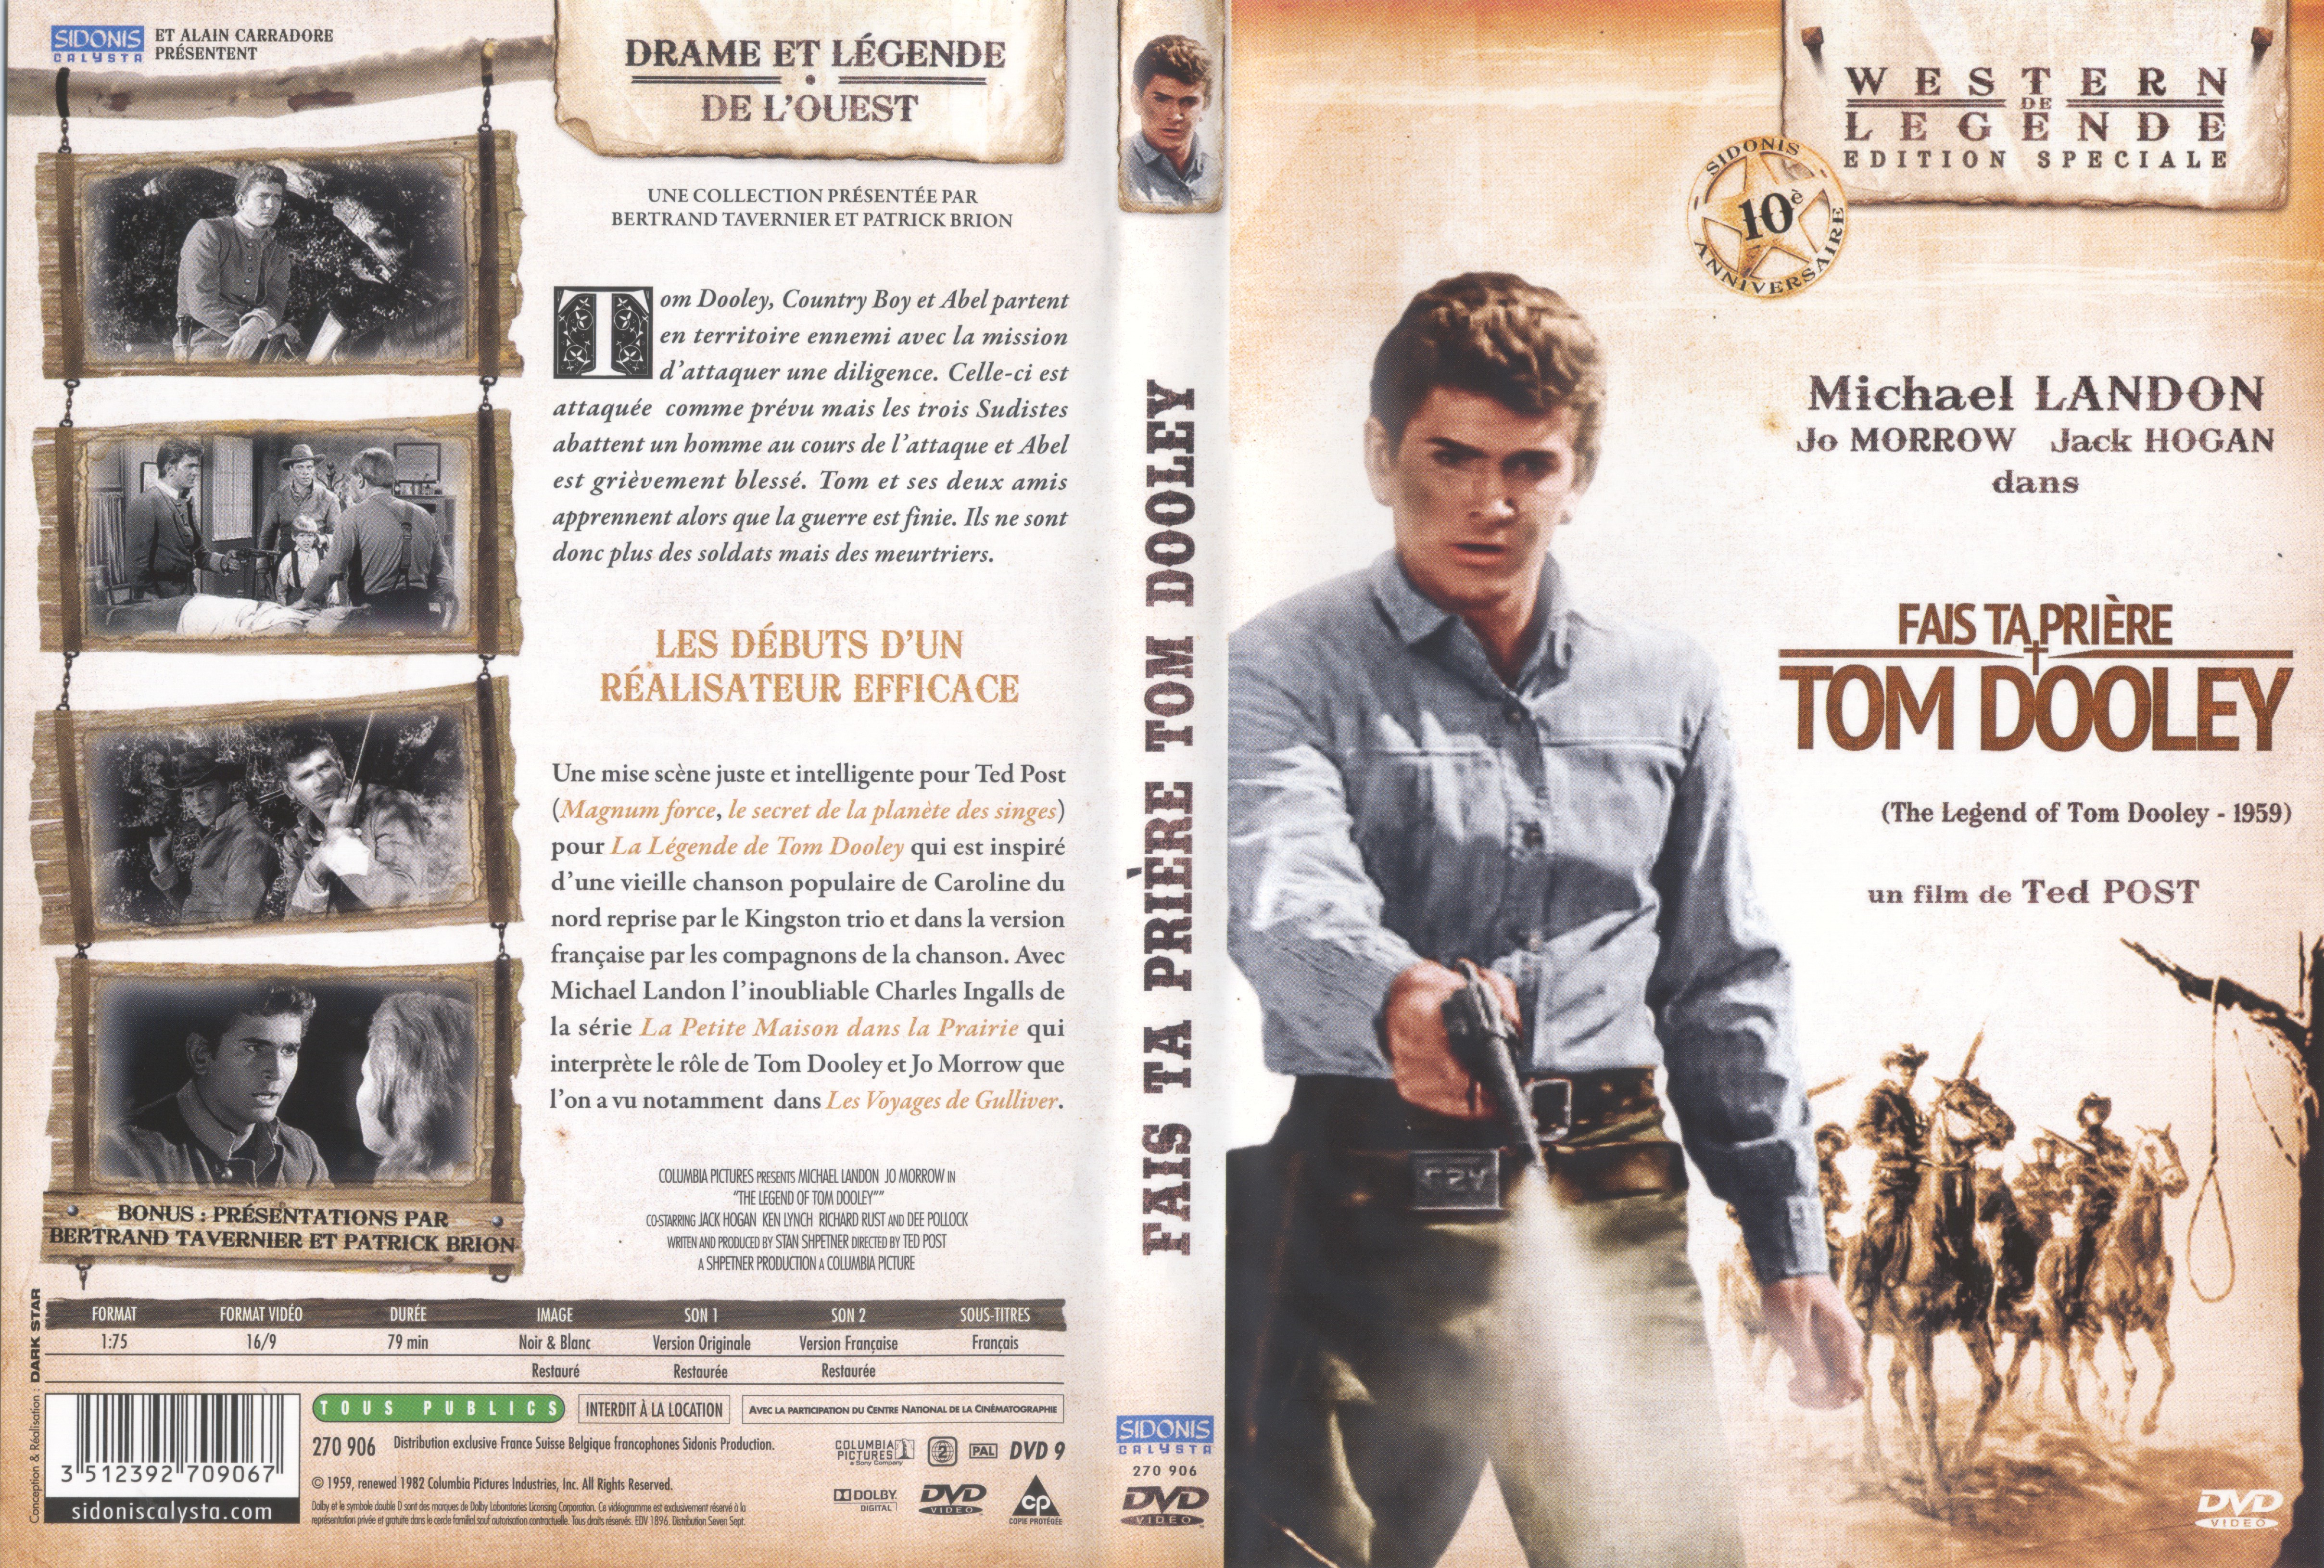 Jaquette DVD Fais ta priere Tom Dooley